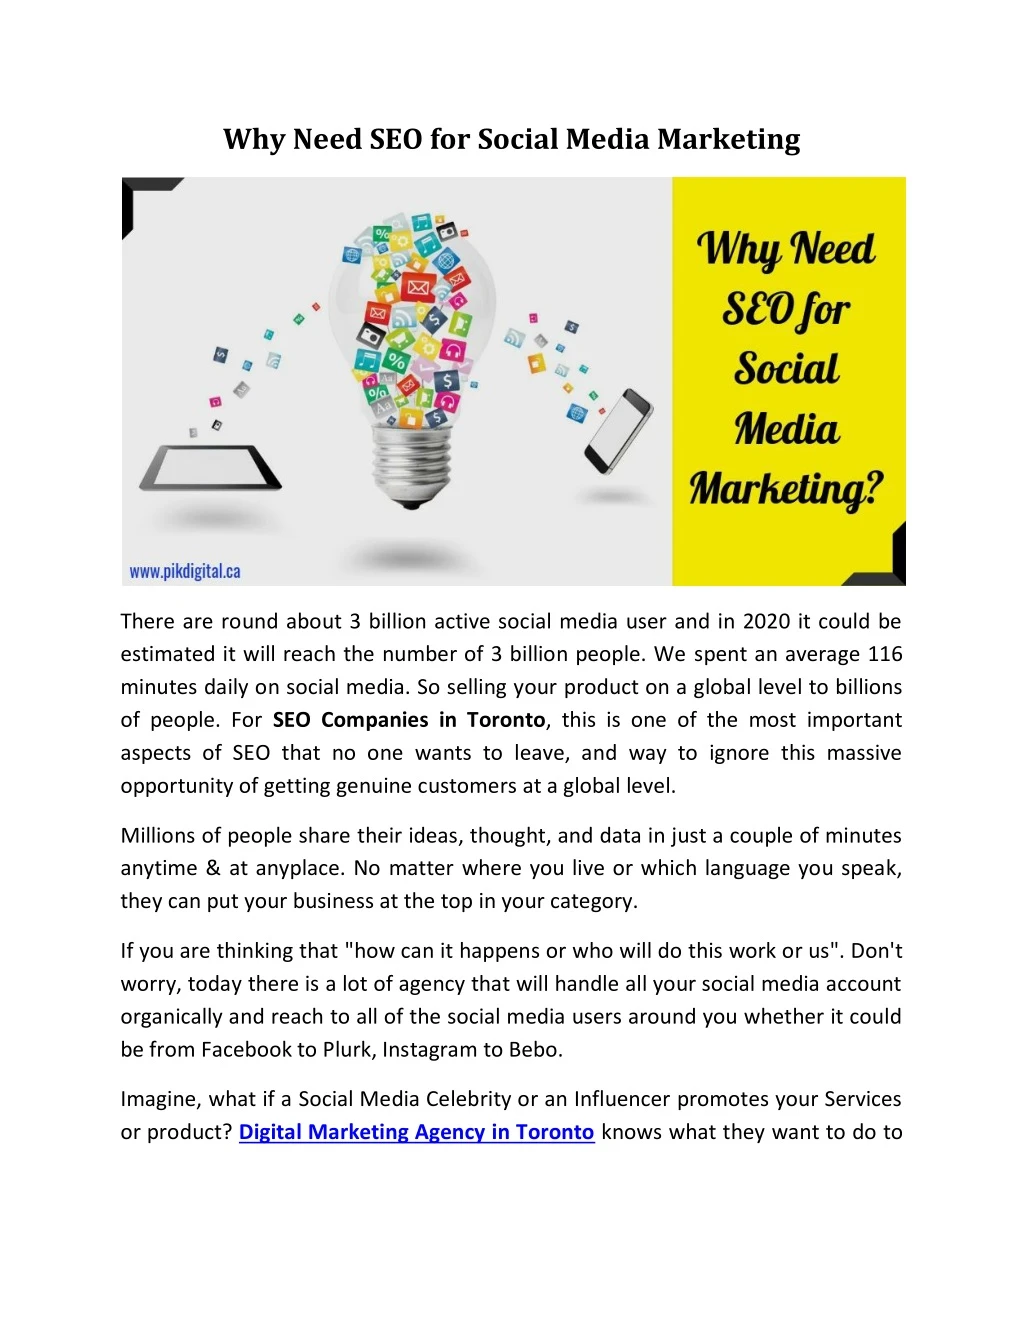 why need seo for social media marketing